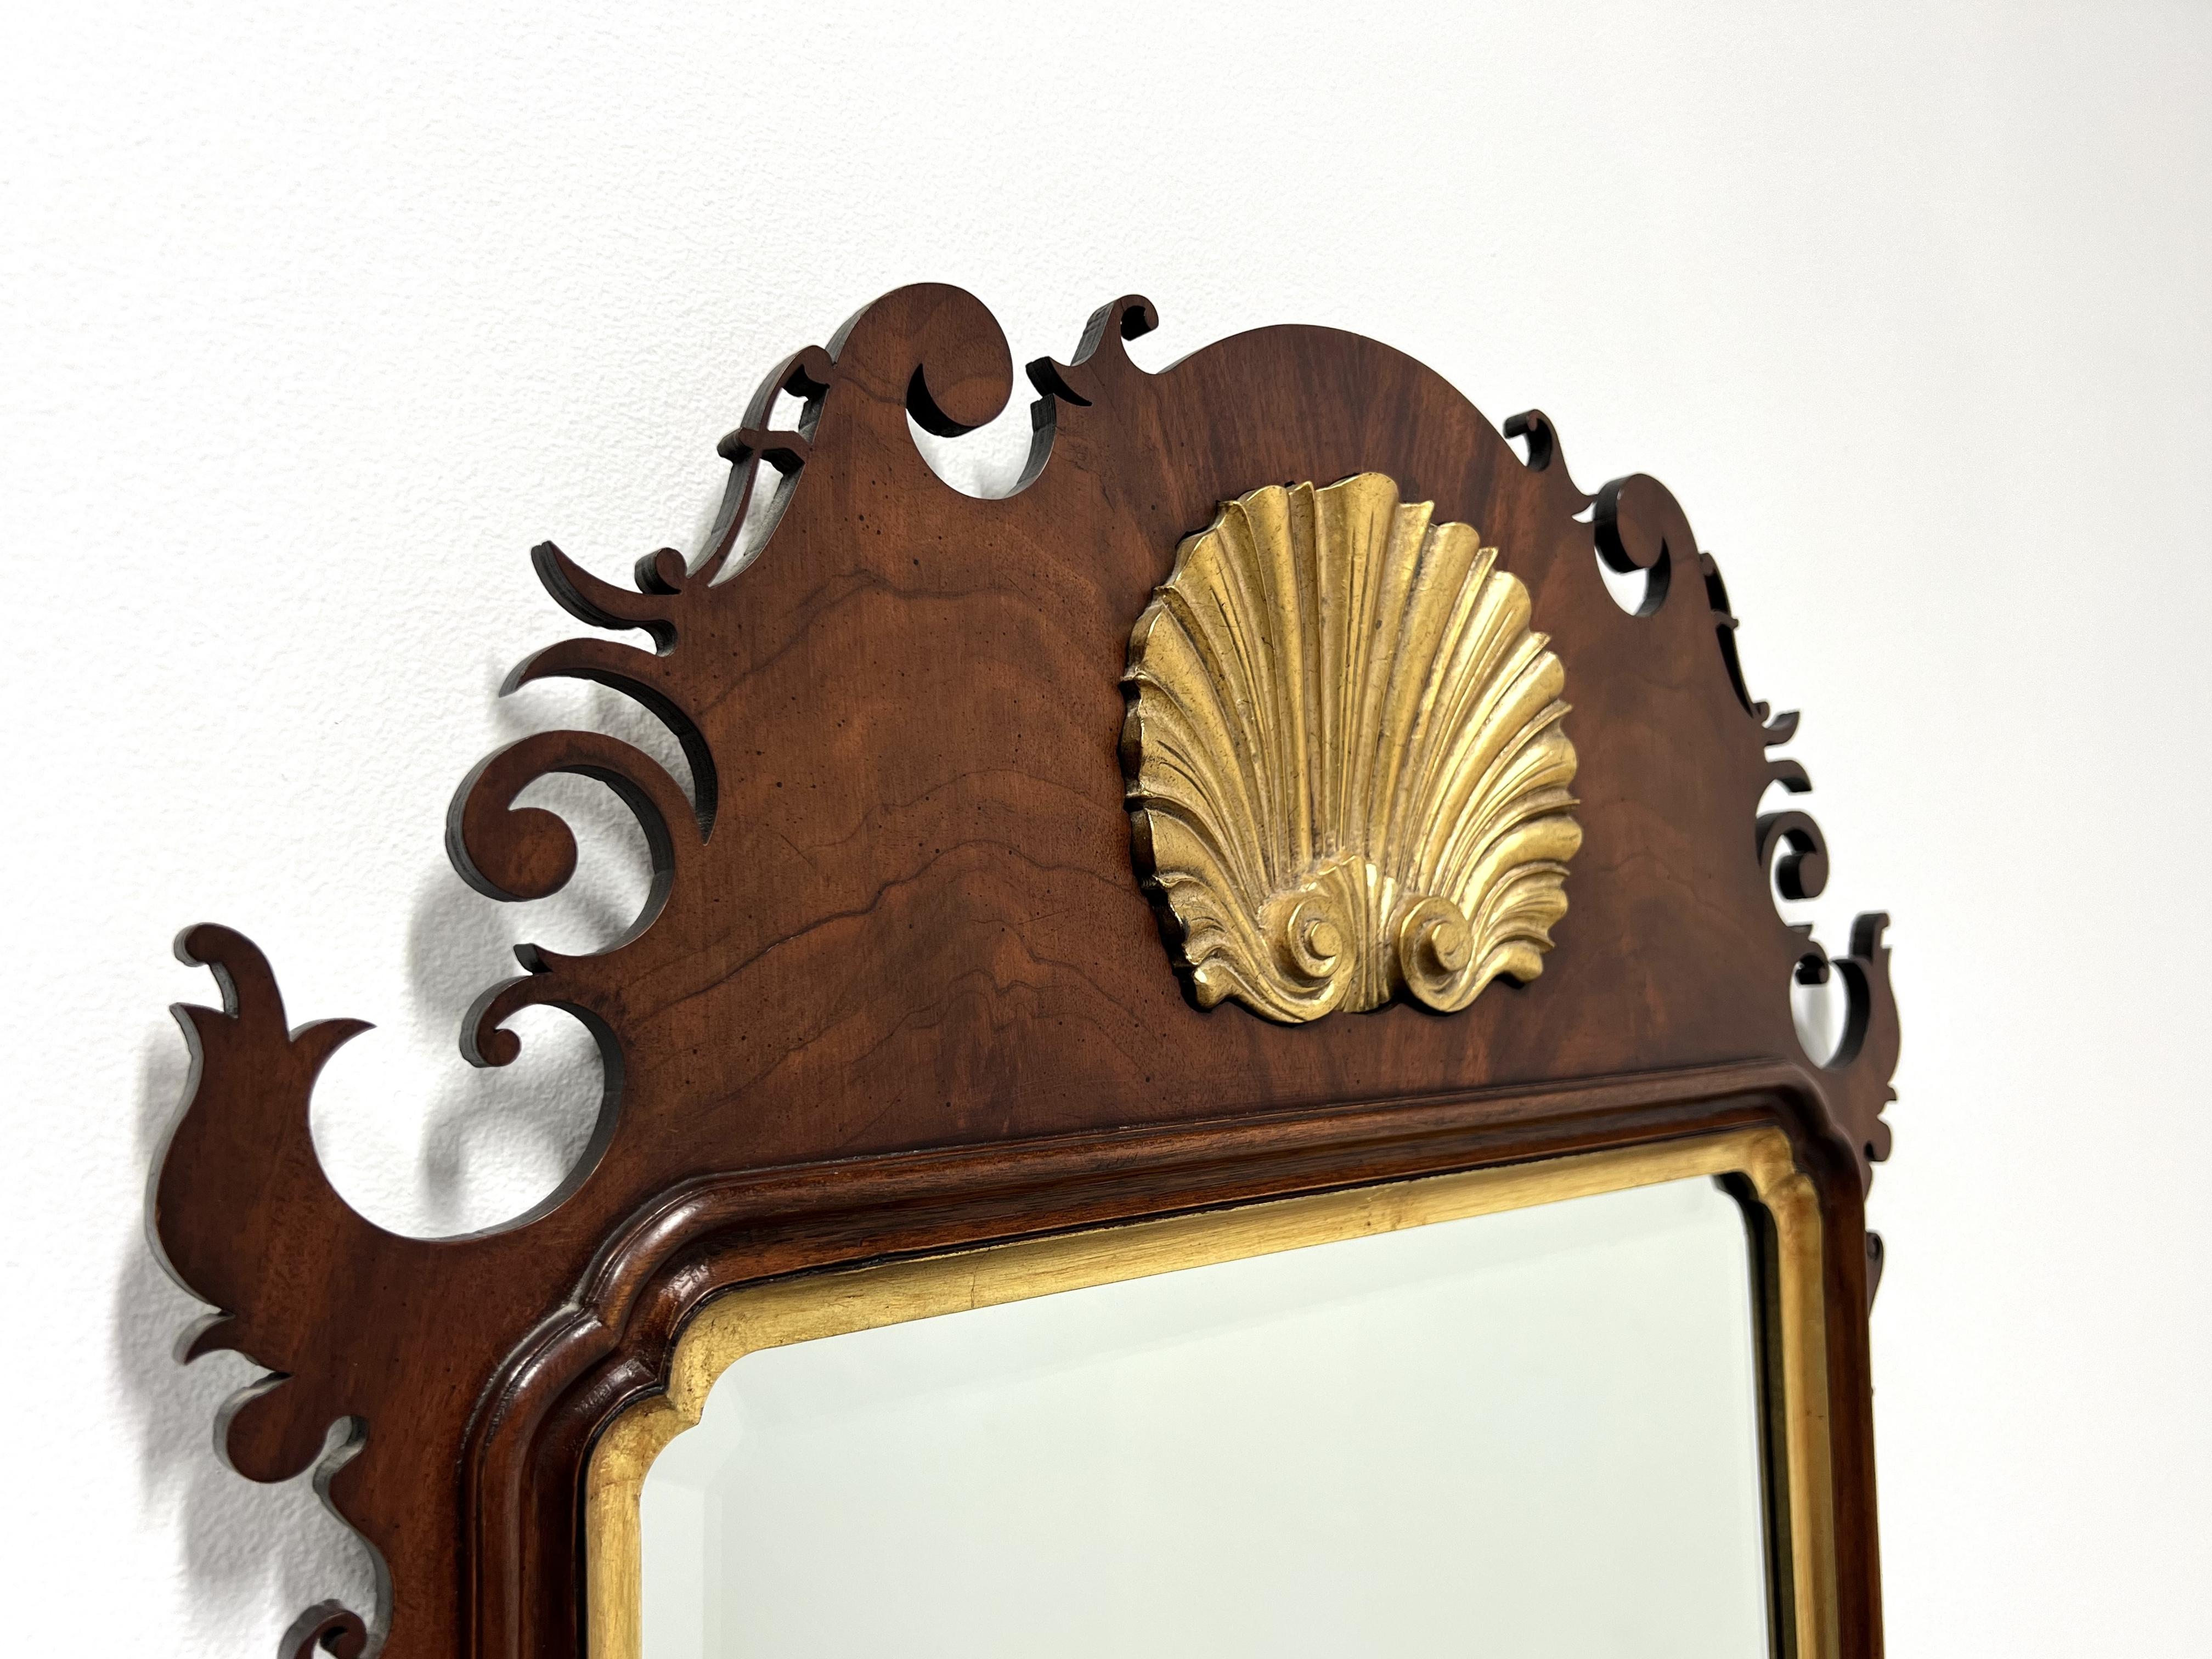 Miroir mural de style Chippendale, sans marque, de qualité similaire à Councill ou Lexington. Verre miroir à bord biseauté dans un cadre en acajou avec garniture dorée et médaillon central doré en forme de coquillage. Fabriqué aux États-Unis, à la